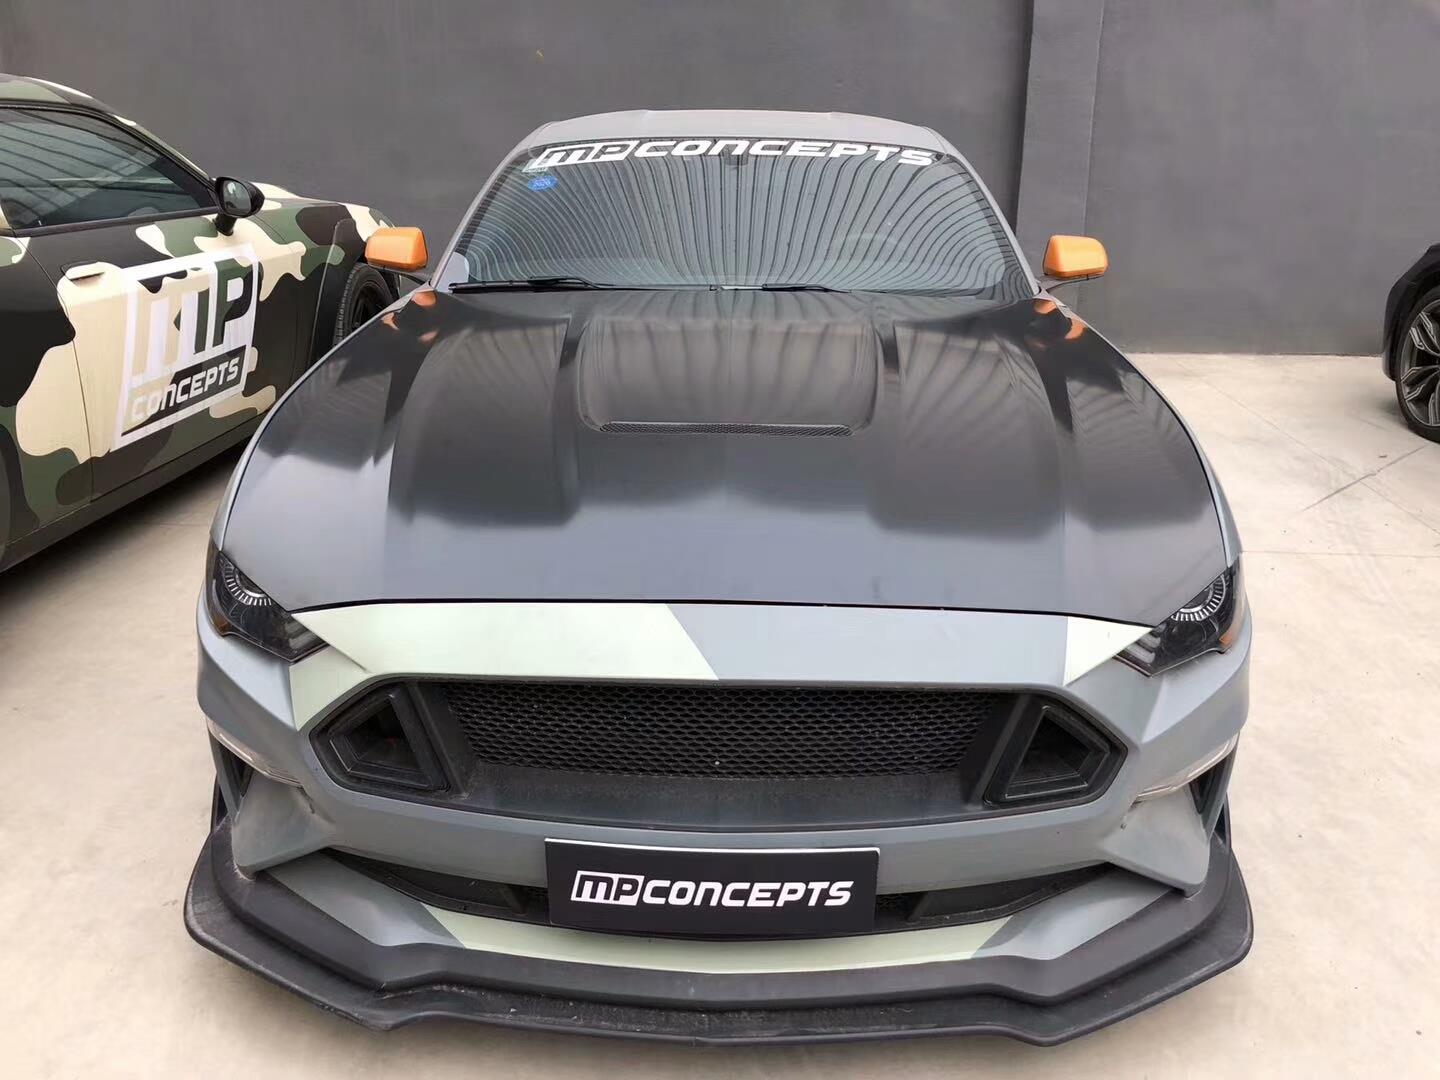 قم بشراء غطاء محرك السيارة / غطاء المحرك من الألومنيوم من MP Concepts لسيارة Ford Mustang. طراز GT350